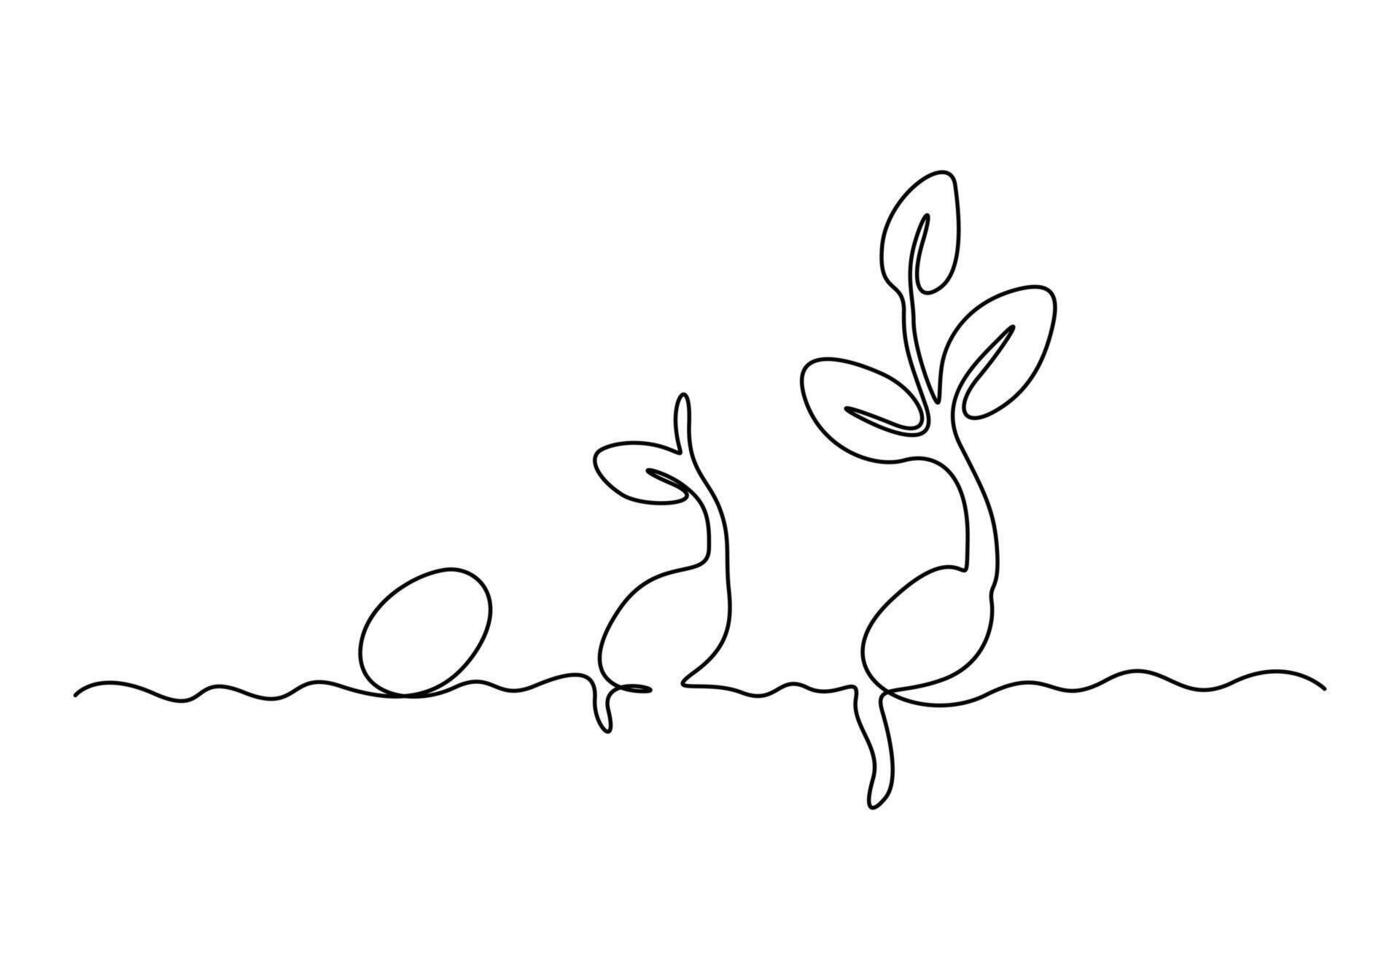 kontinuierlich einer Linie Zeichnung von Pflanze Wachstum wird bearbeitet Gliederung Vektor Illustration